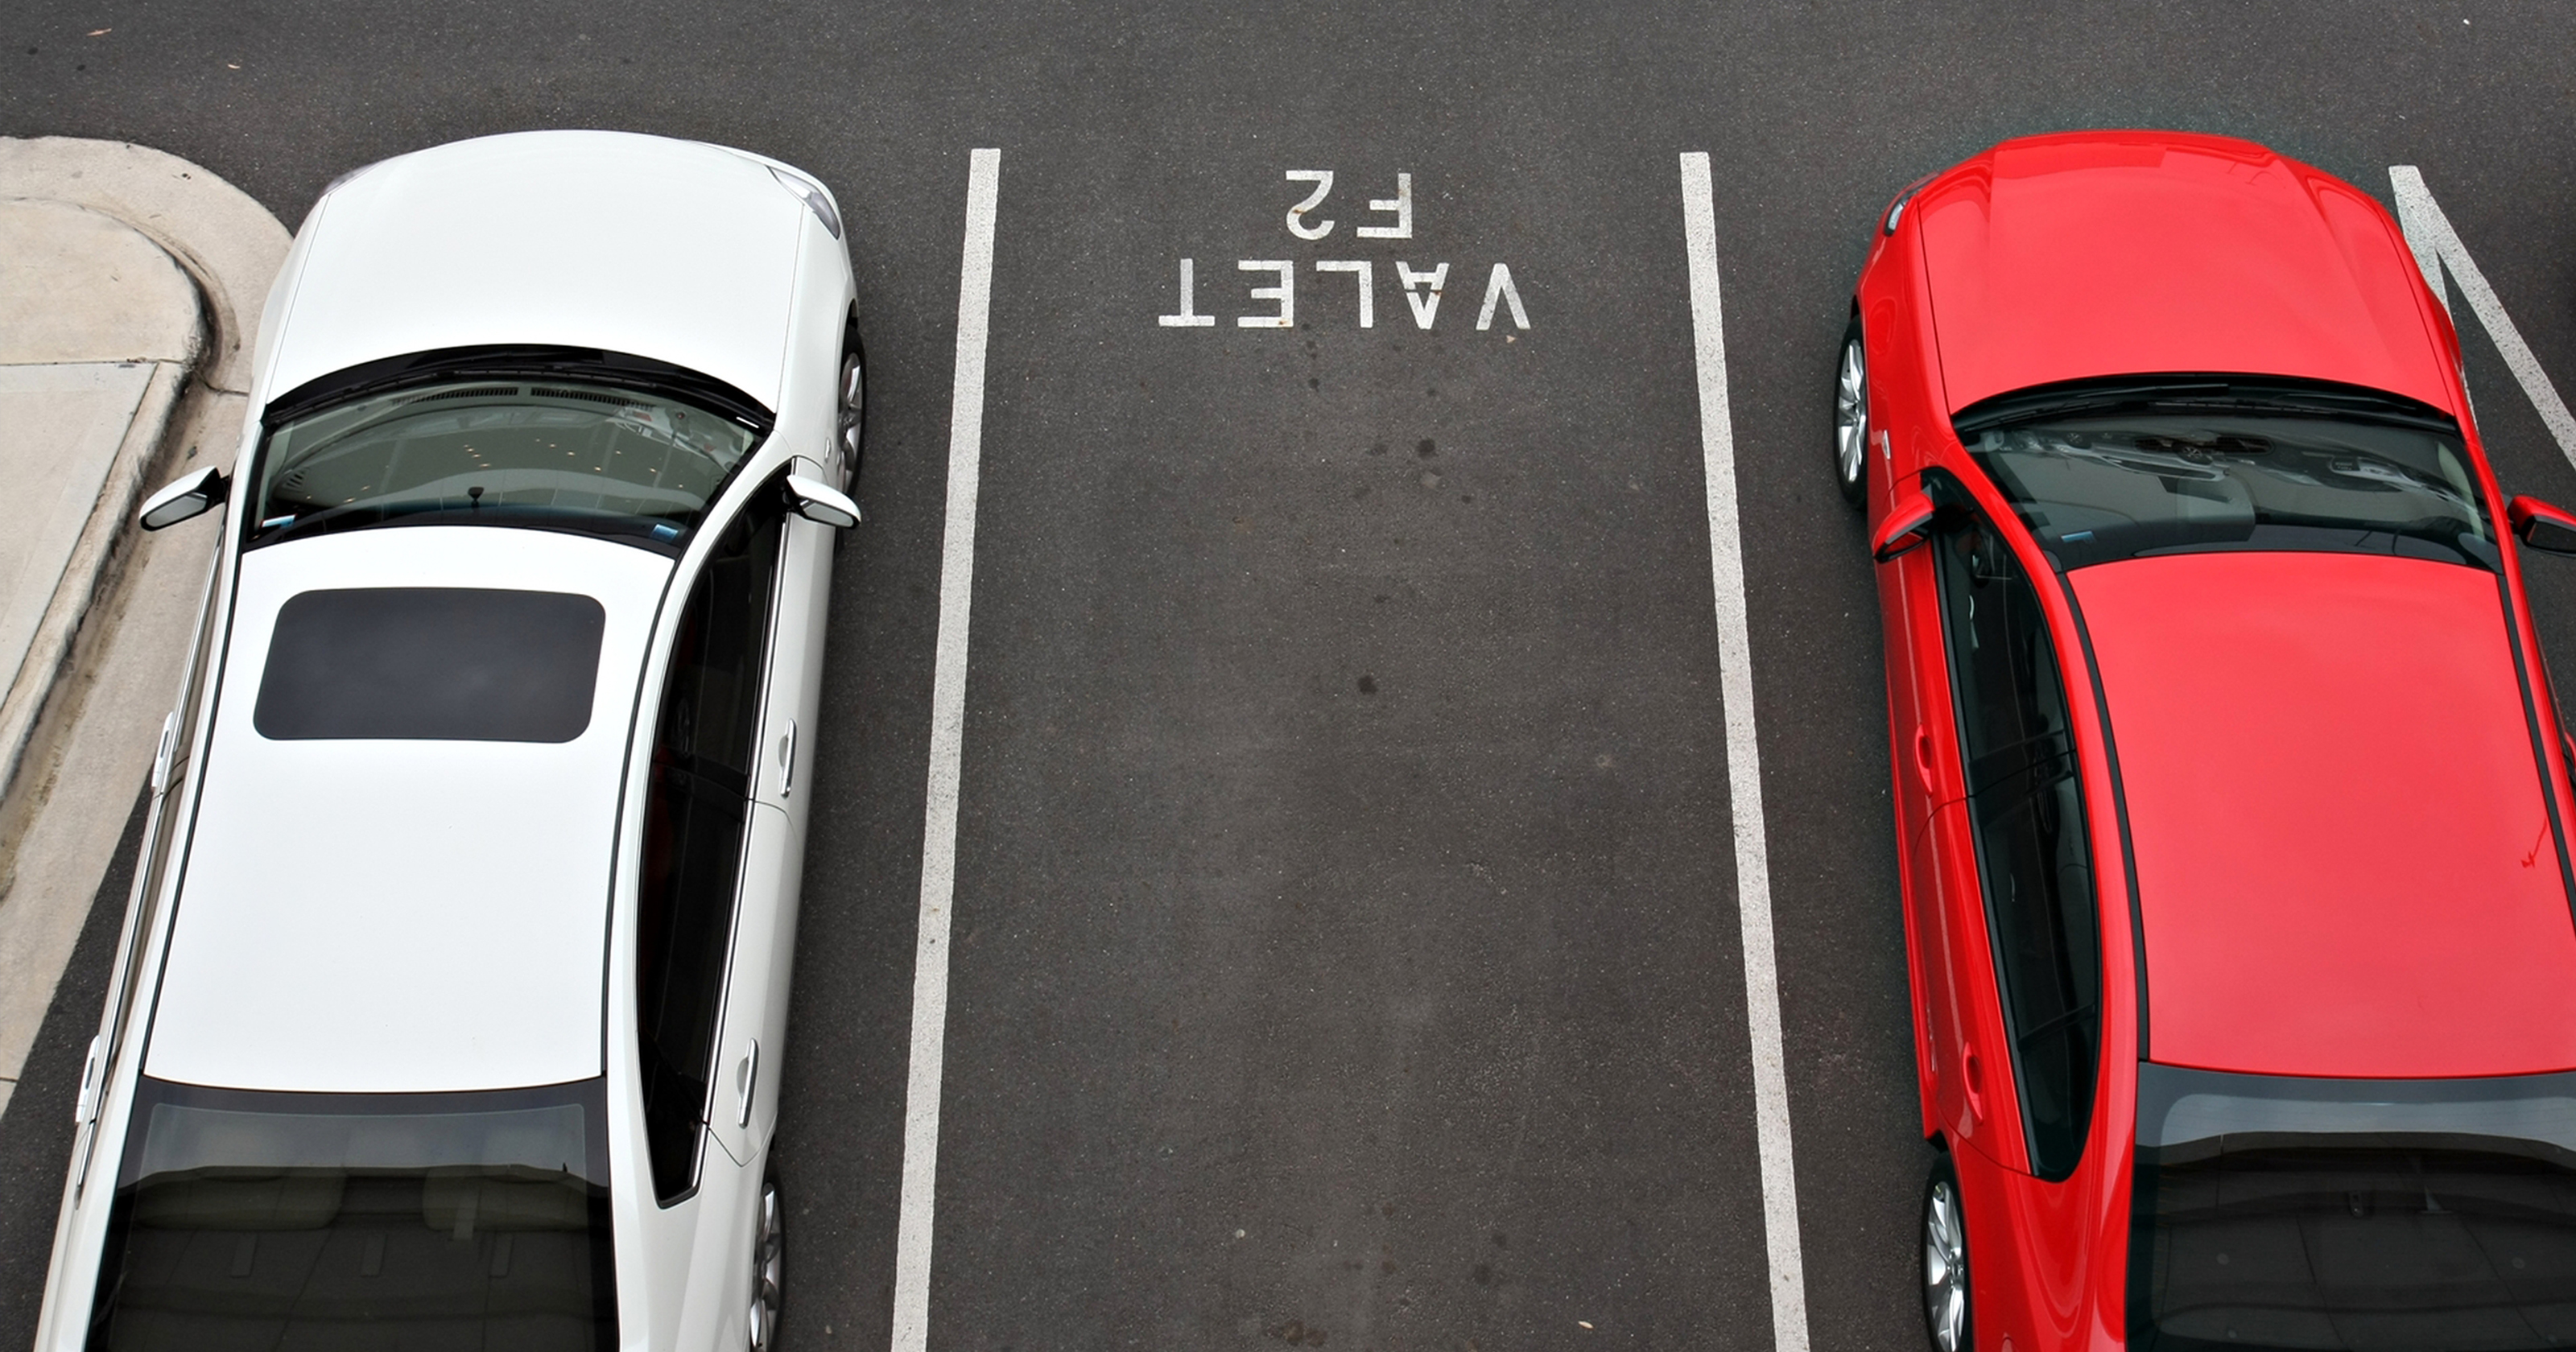 5 dicas para estacionar seu carro na garagem - ComparaOnline